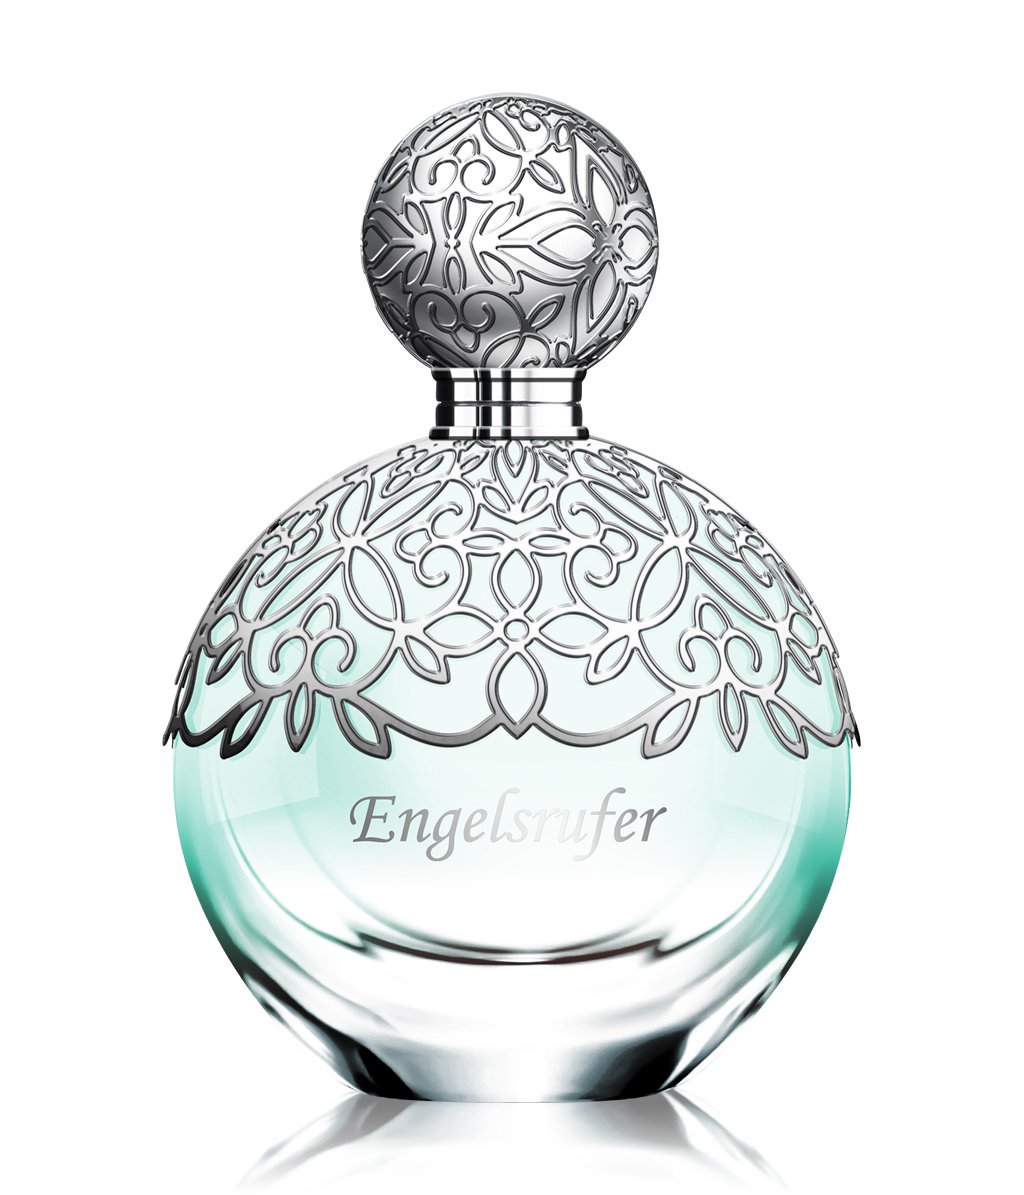 a Heaven for fragrance perfume women - Engelsrufer 2019